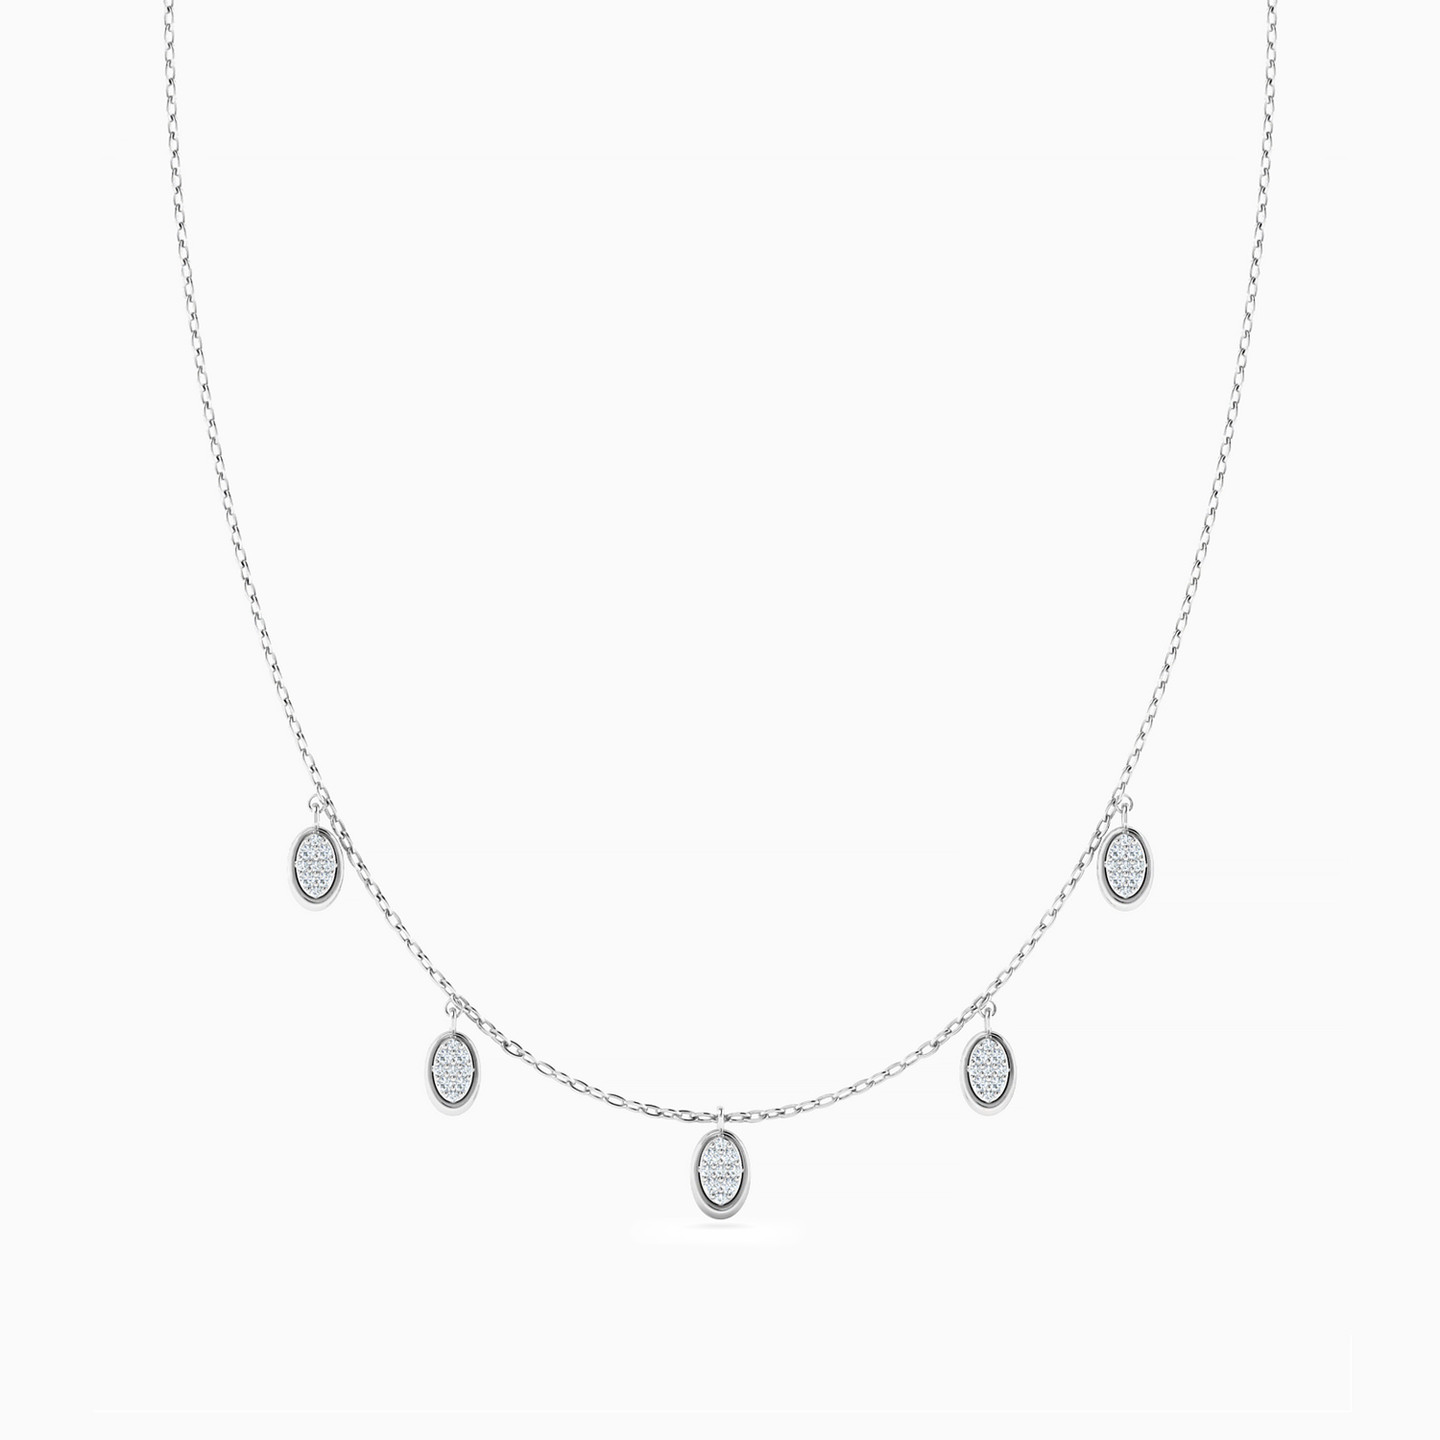 18K Gold Diamond Charms Necklace - 3